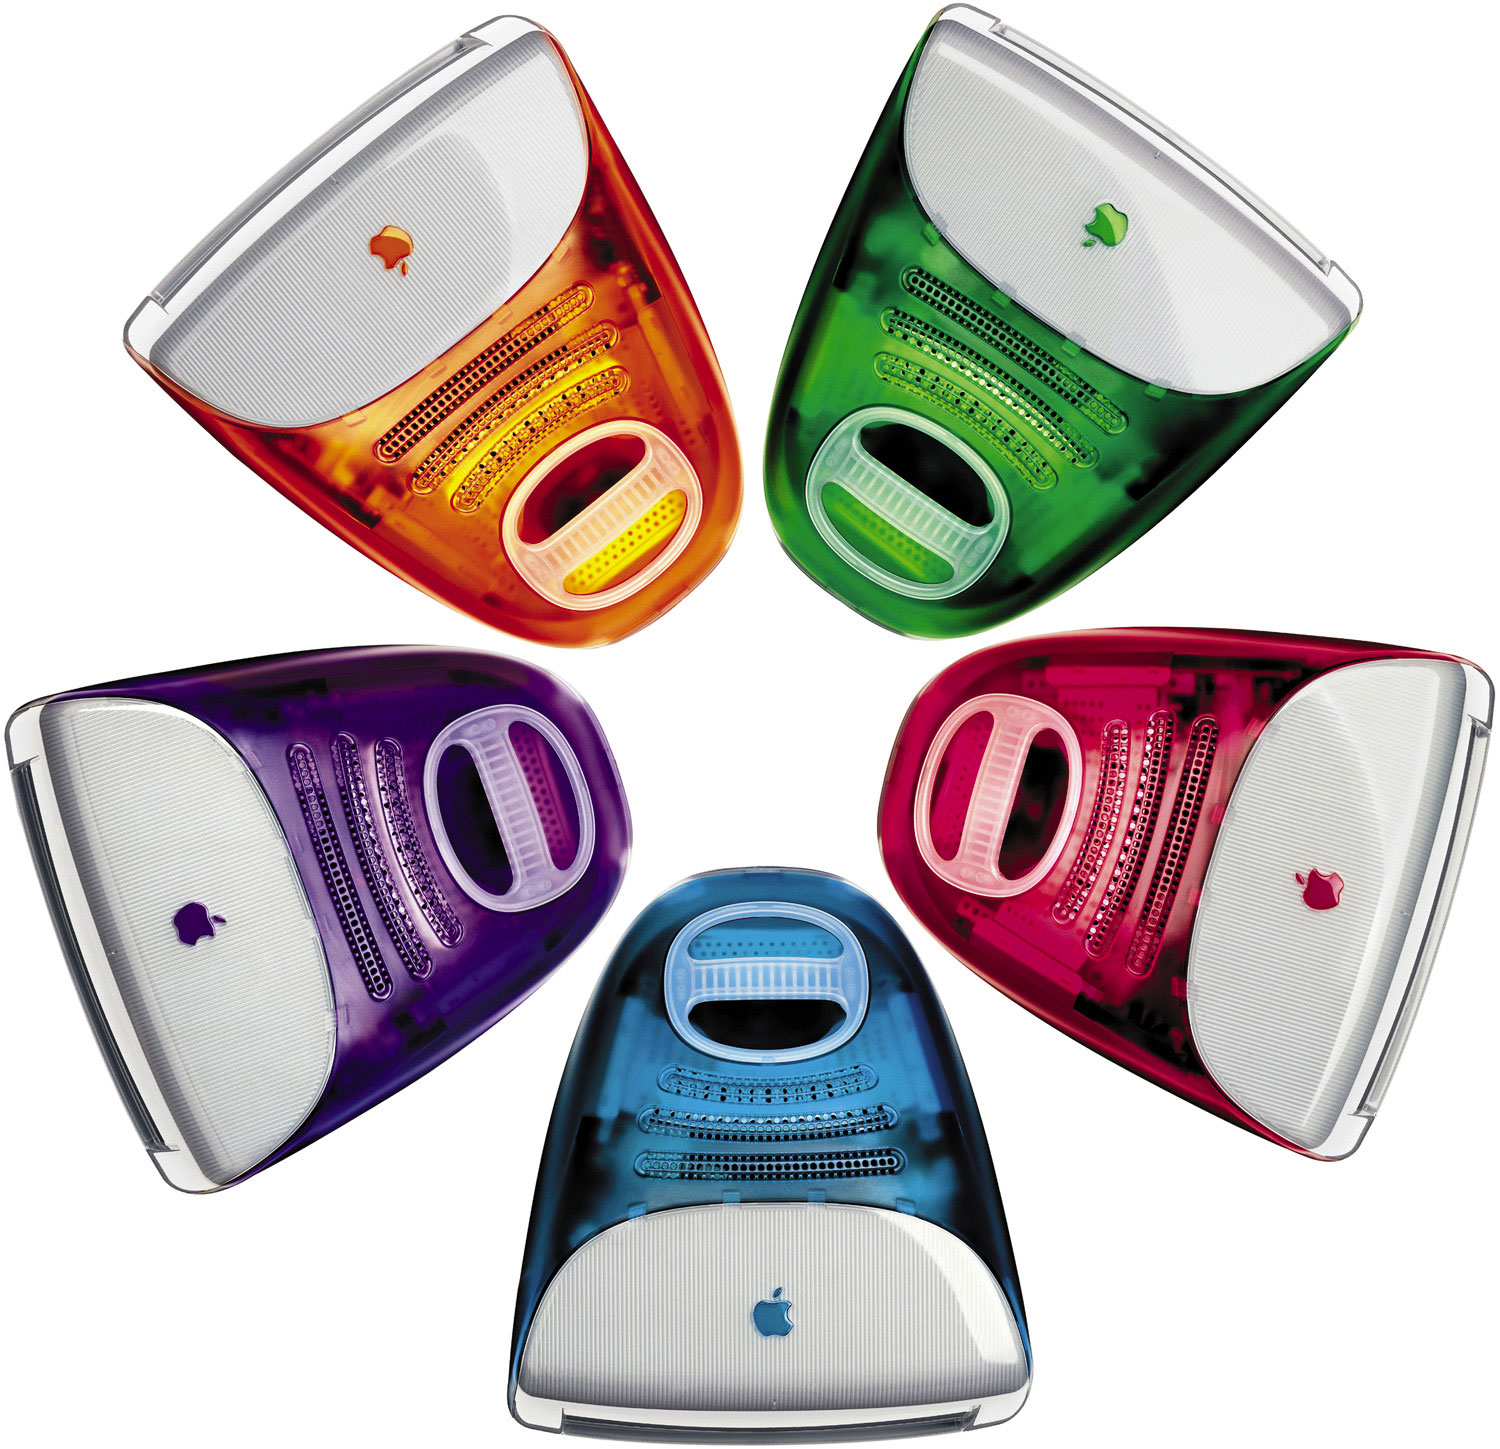 iMac G3 en todos sus colores